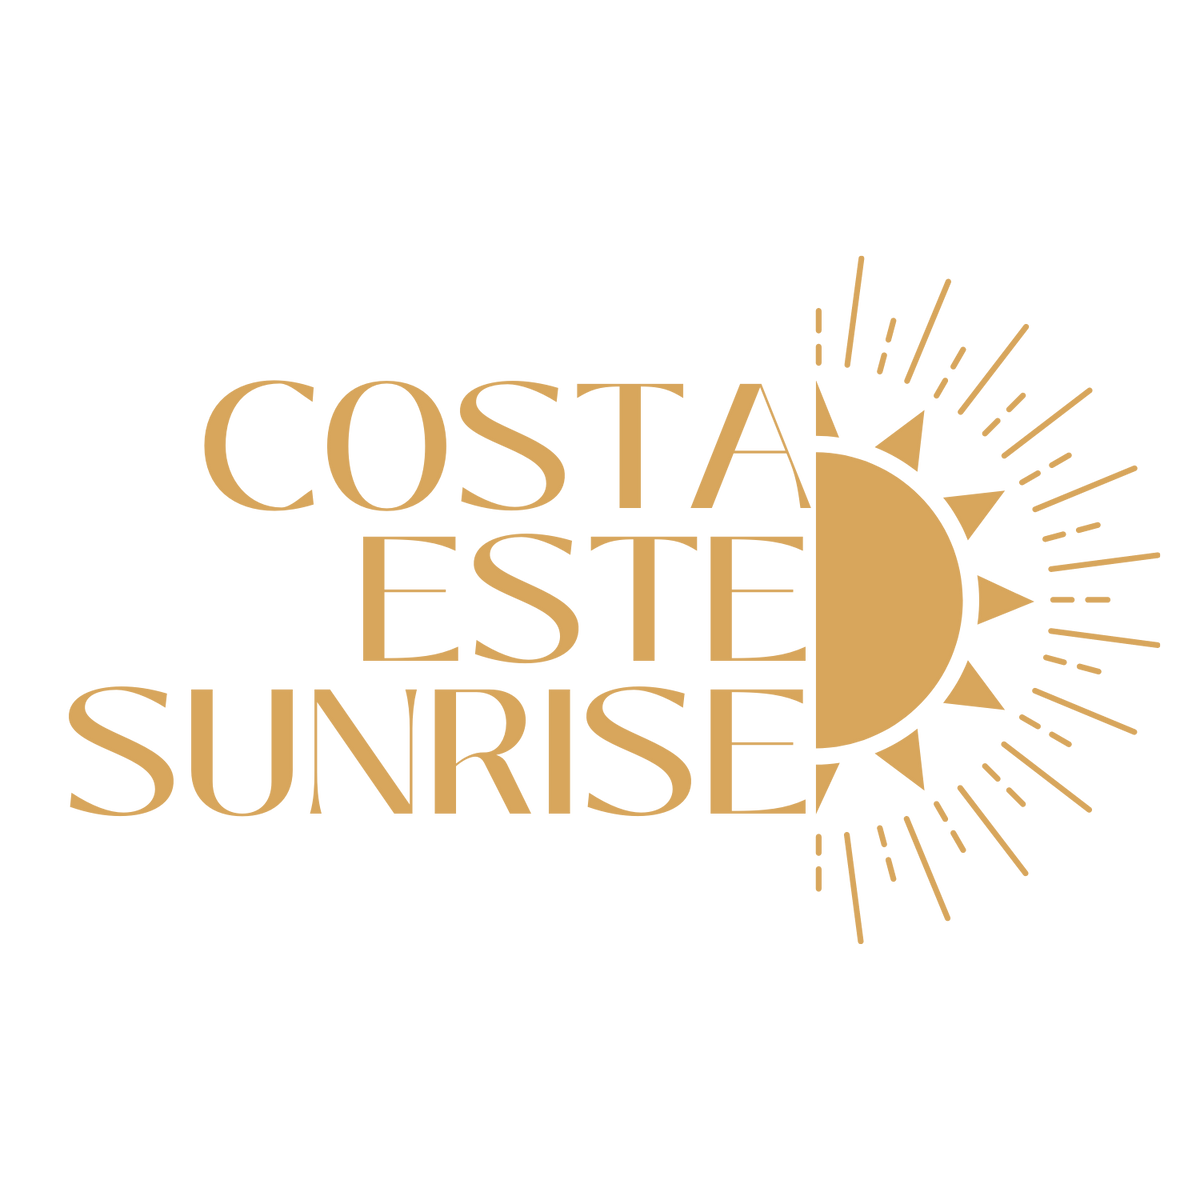 Contact – Costa Este Sunrise